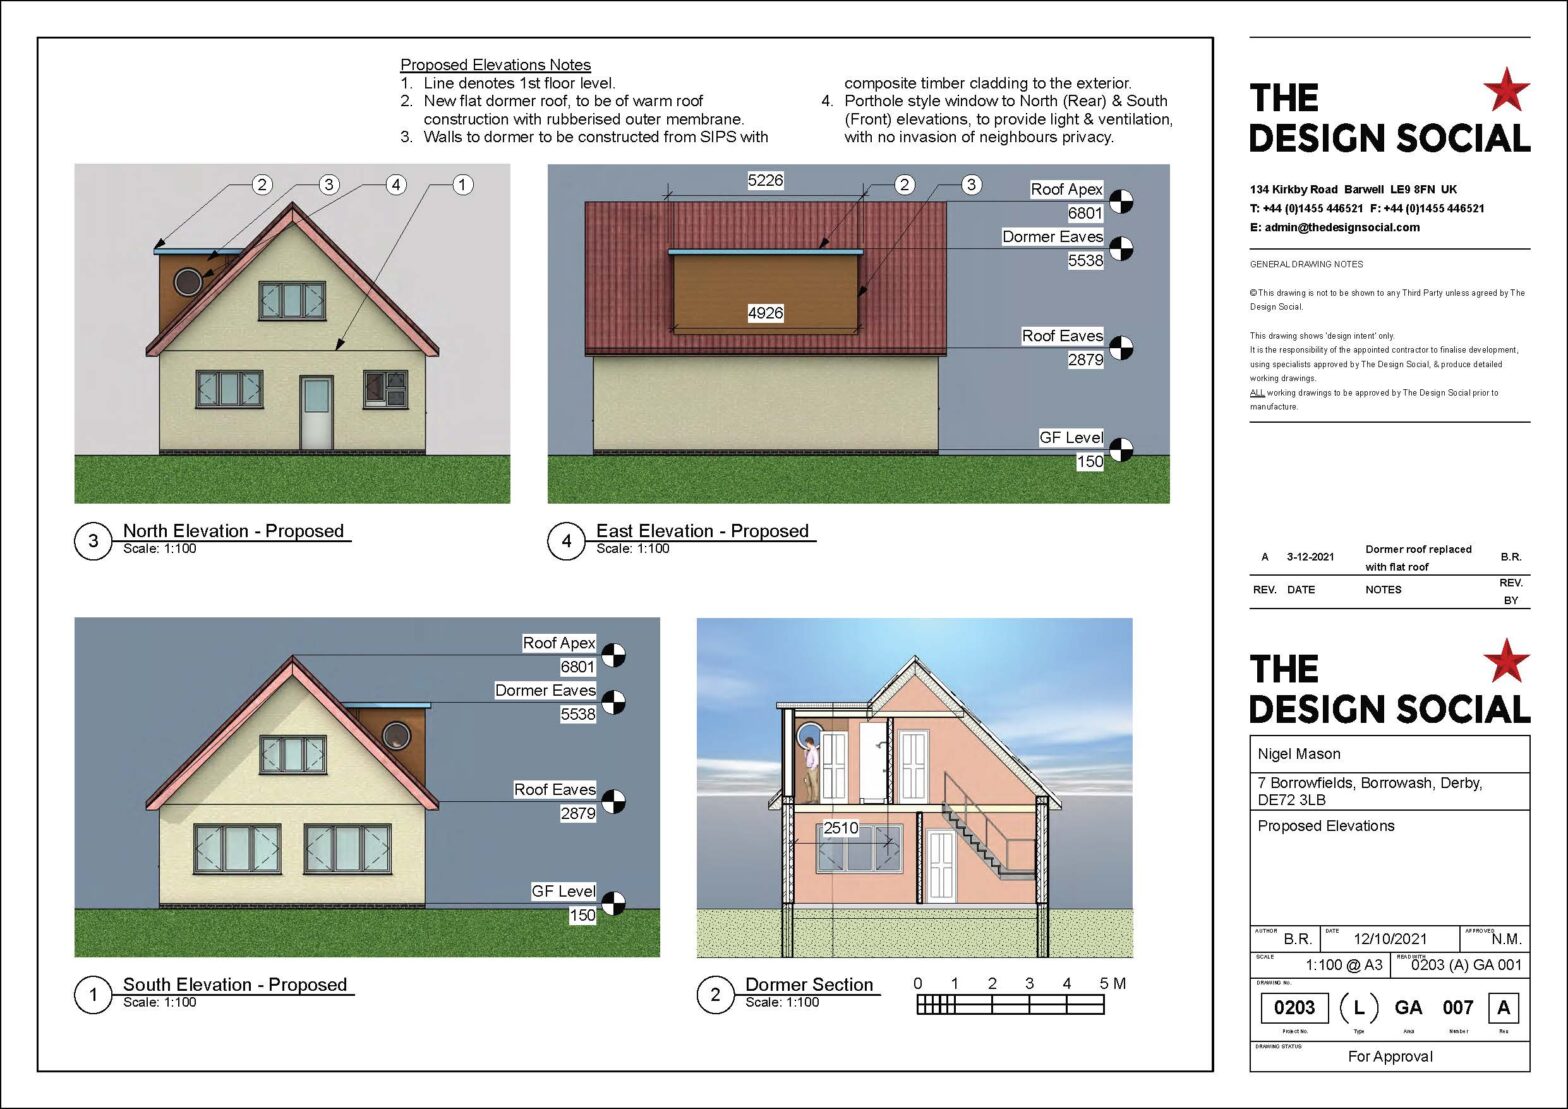 Nigel Mason – Planning Application for a Dormer Window – Borrowash, Derby – Review